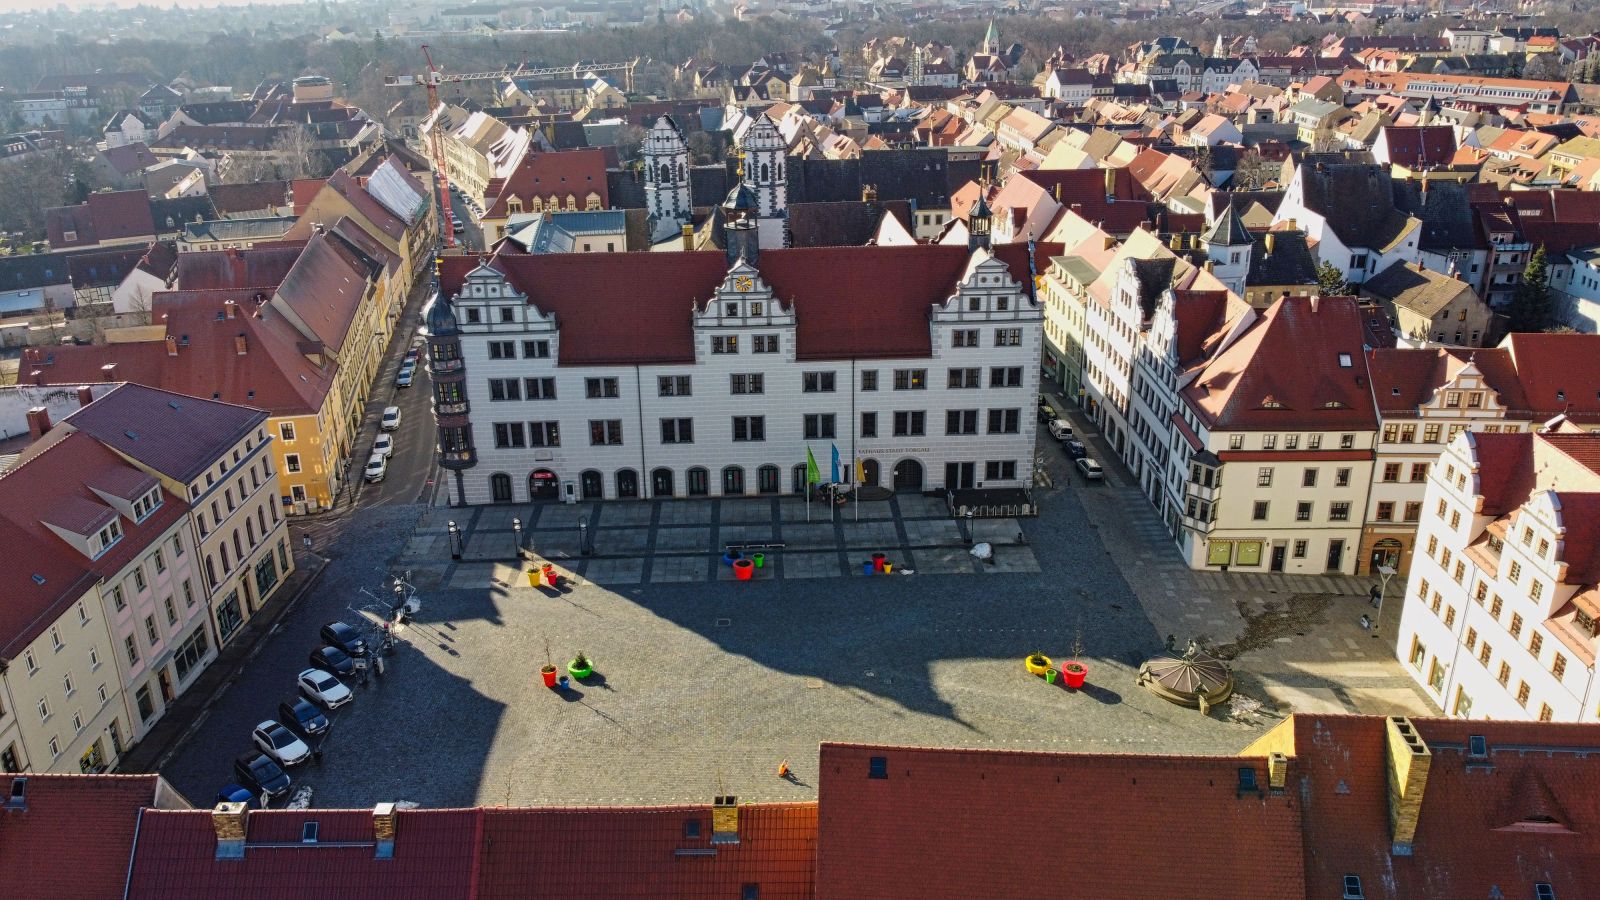 Markt in Torgau Luftbildaufnahme mit Rathaus